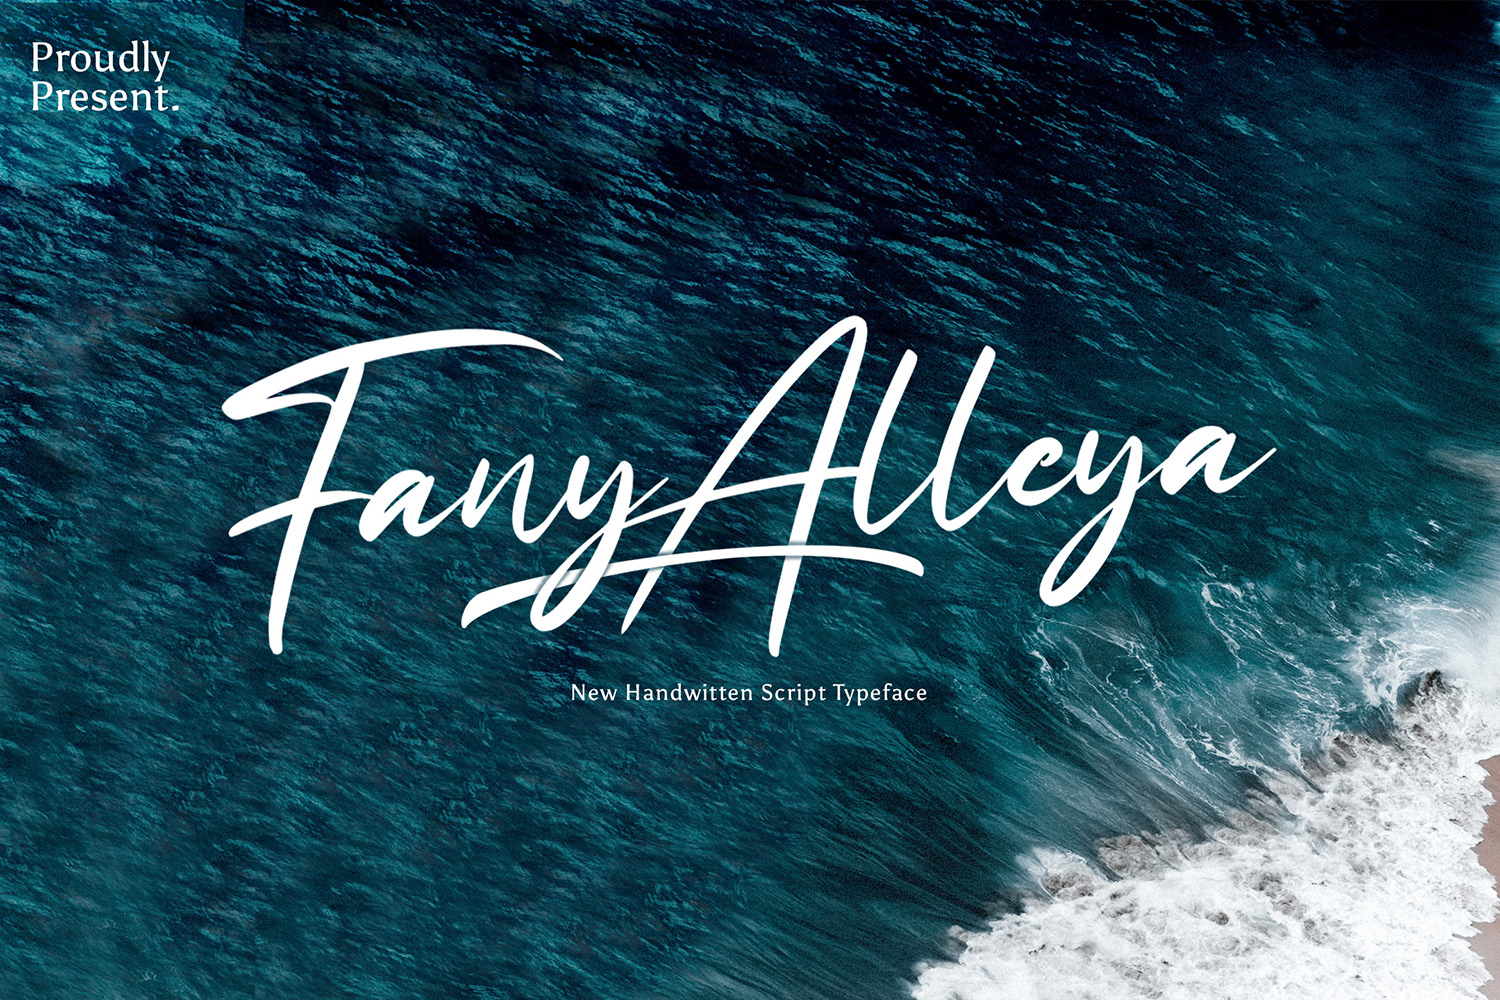 Fany Alleya Free Font